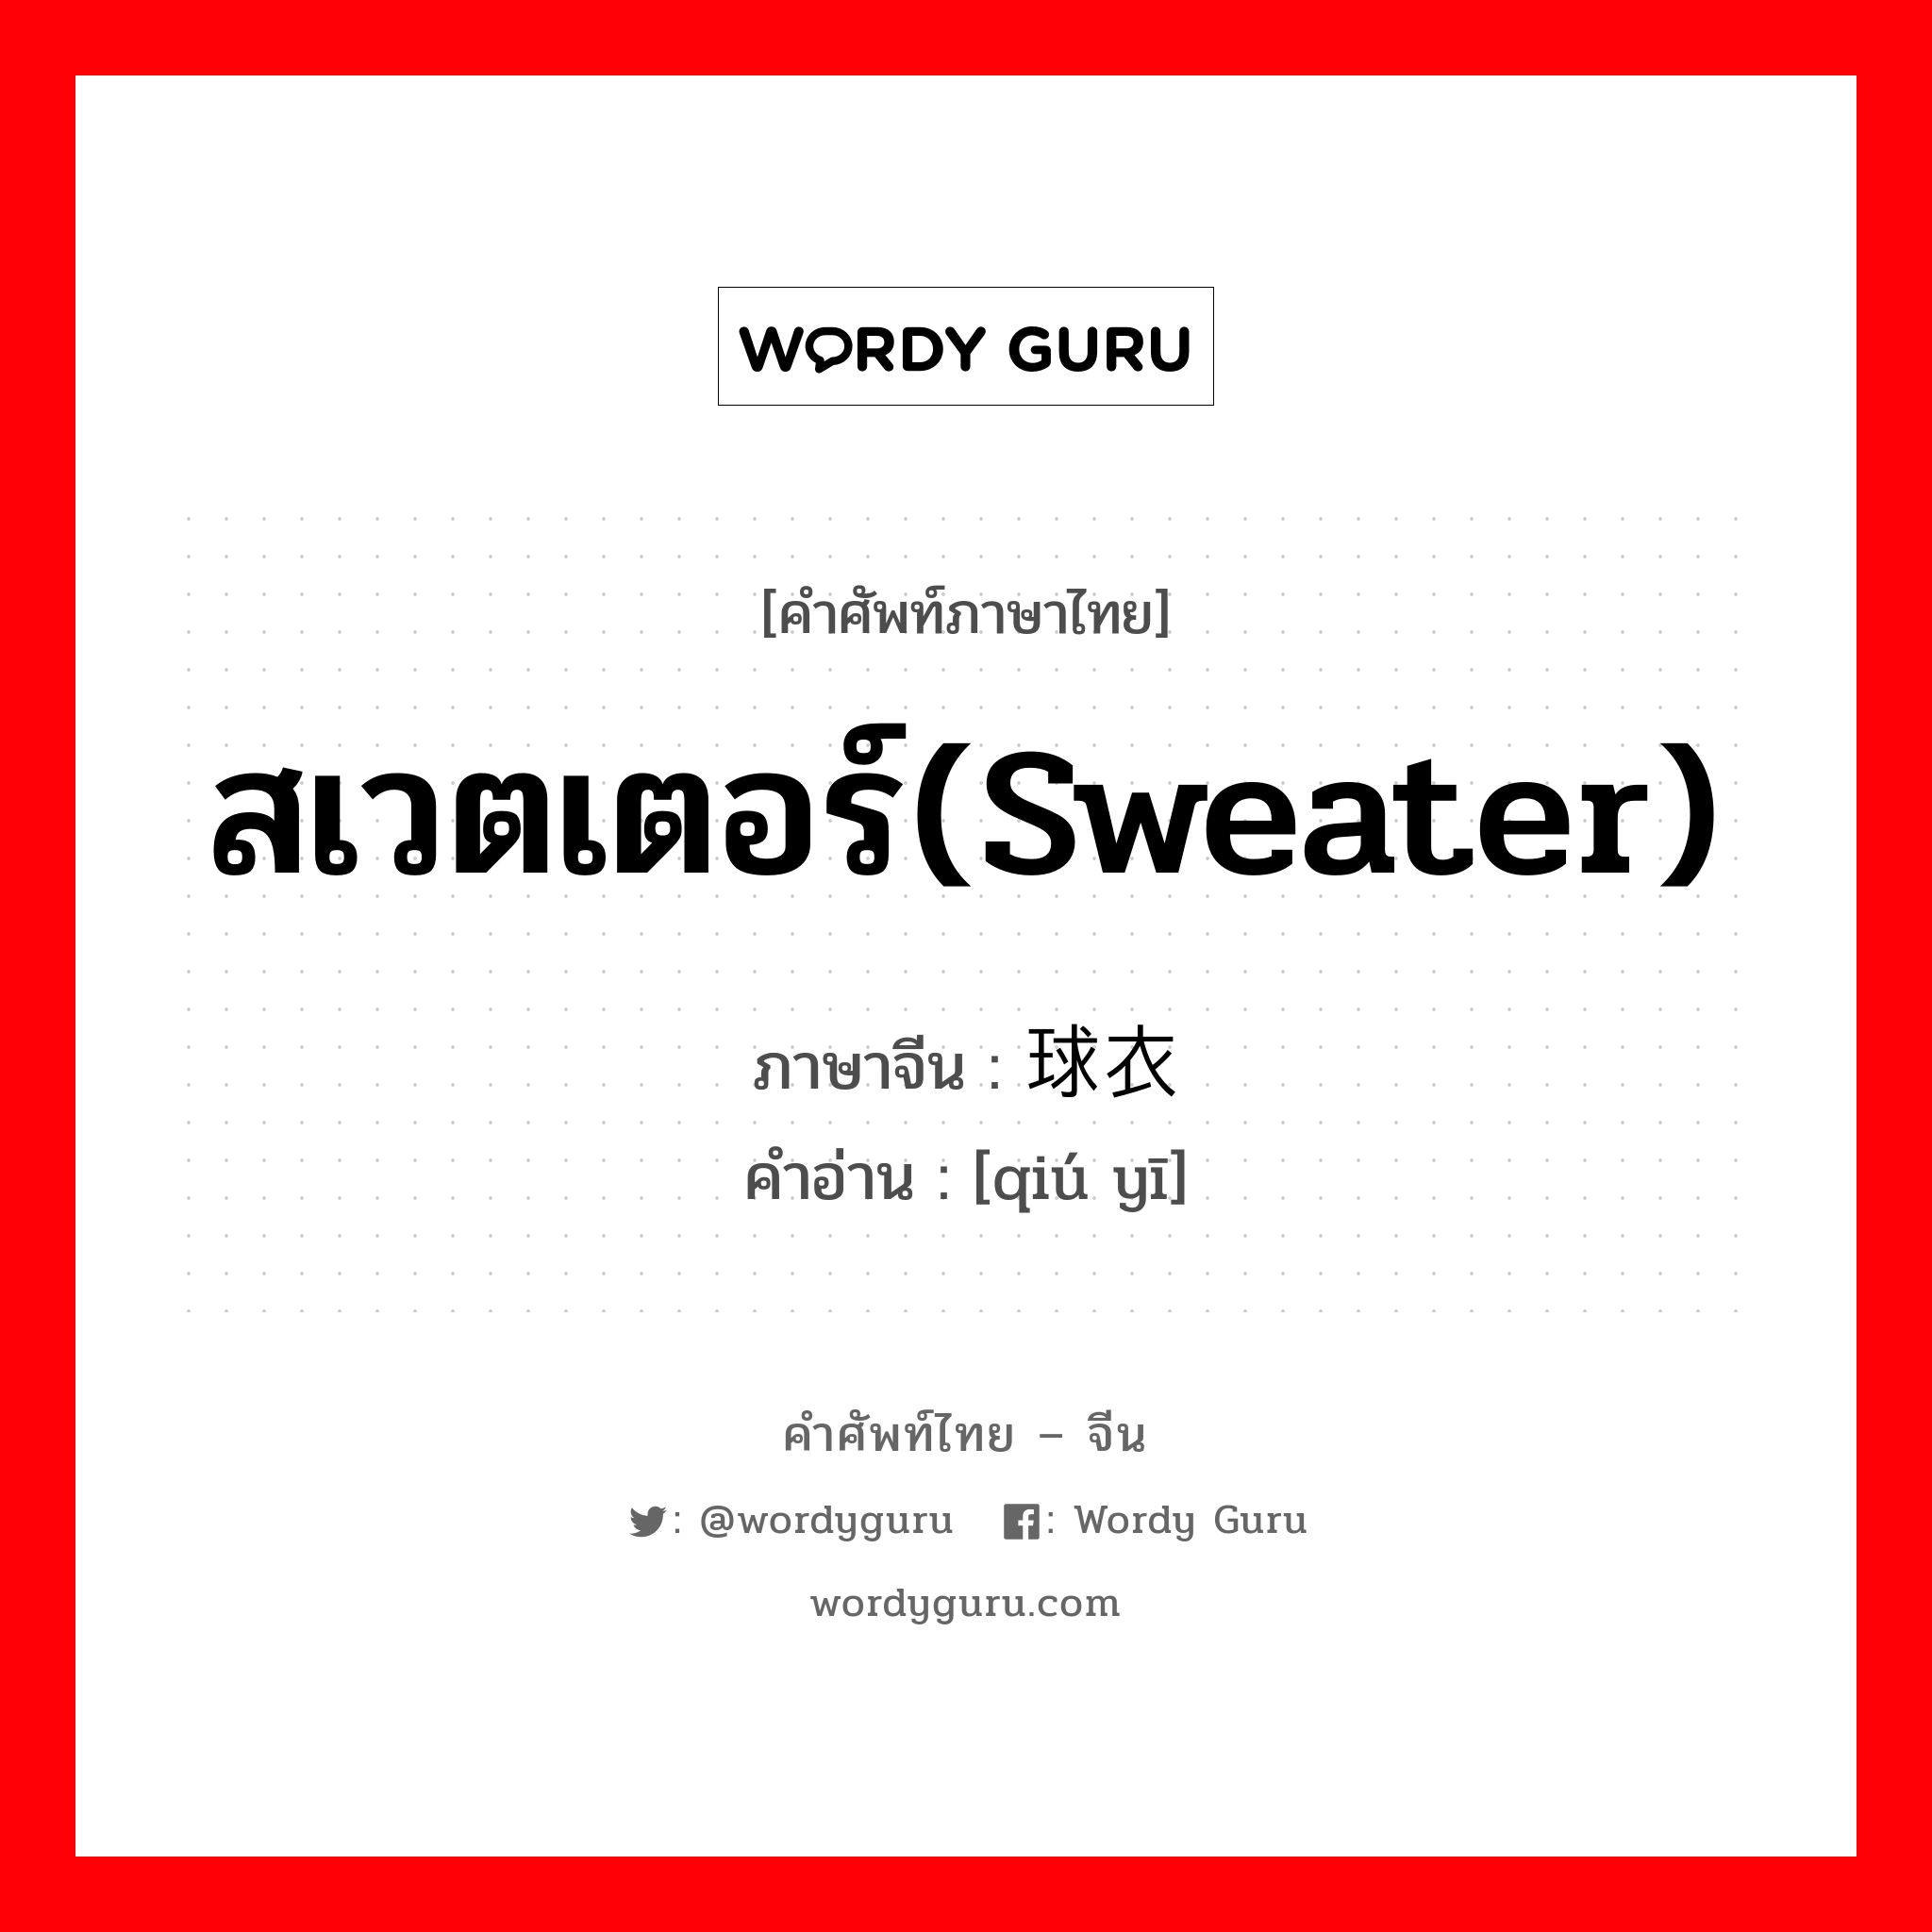 สเวตเตอร์(sweater) ภาษาจีนคืออะไร, คำศัพท์ภาษาไทย - จีน สเวตเตอร์(sweater) ภาษาจีน 球衣 คำอ่าน [qiú yī]